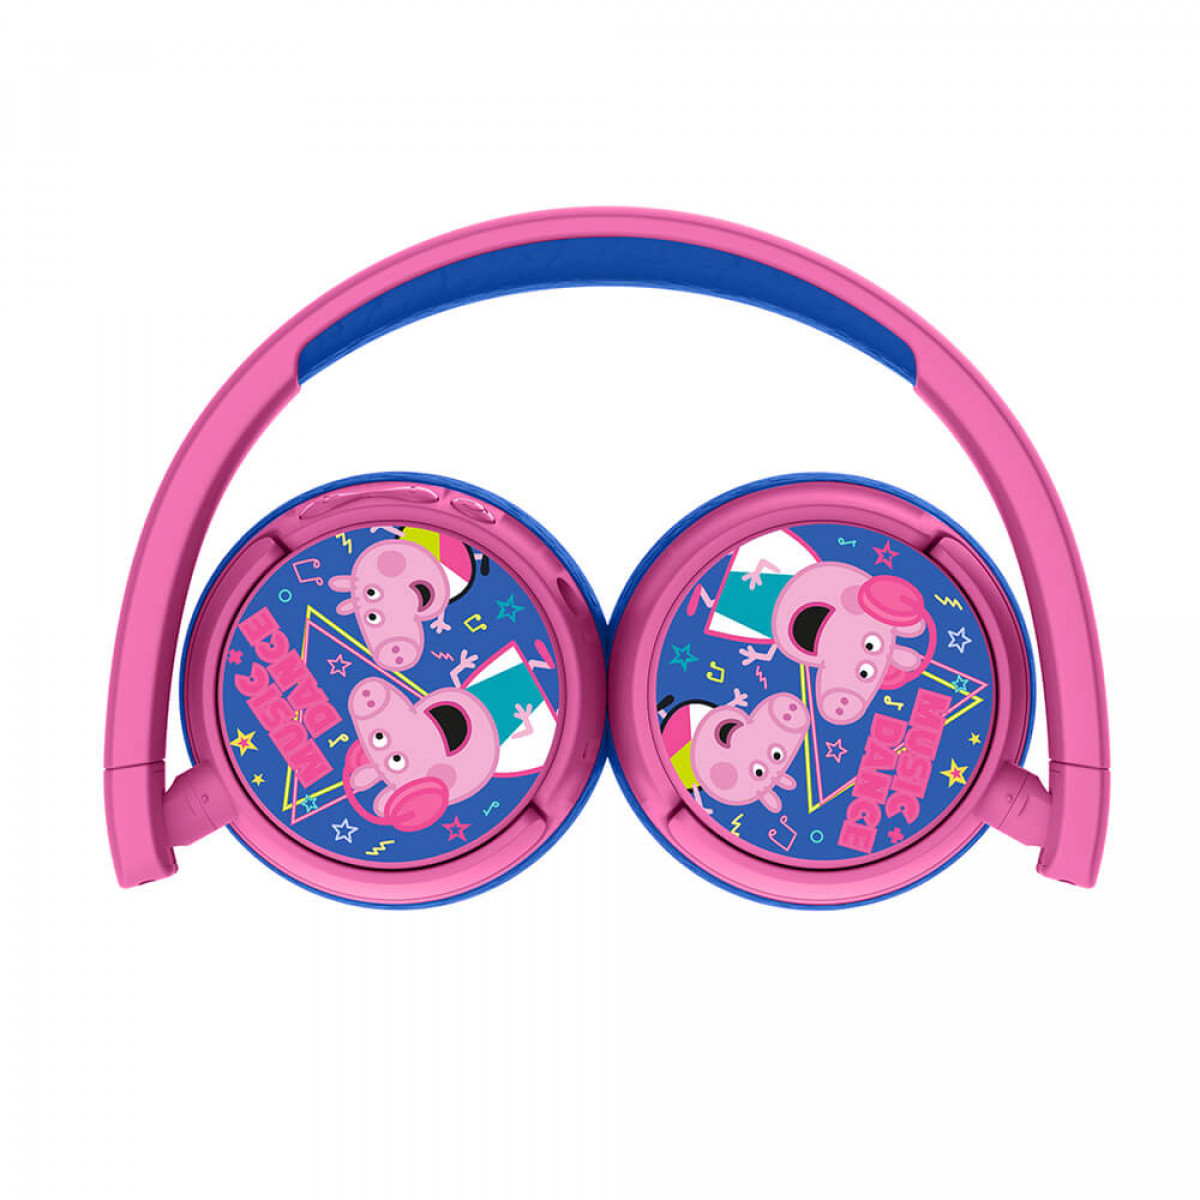 Wireless Pink PIG Kopfhörer Kopfhörer On-Ear On-ear PEPPA Junior 85dB/95dB,